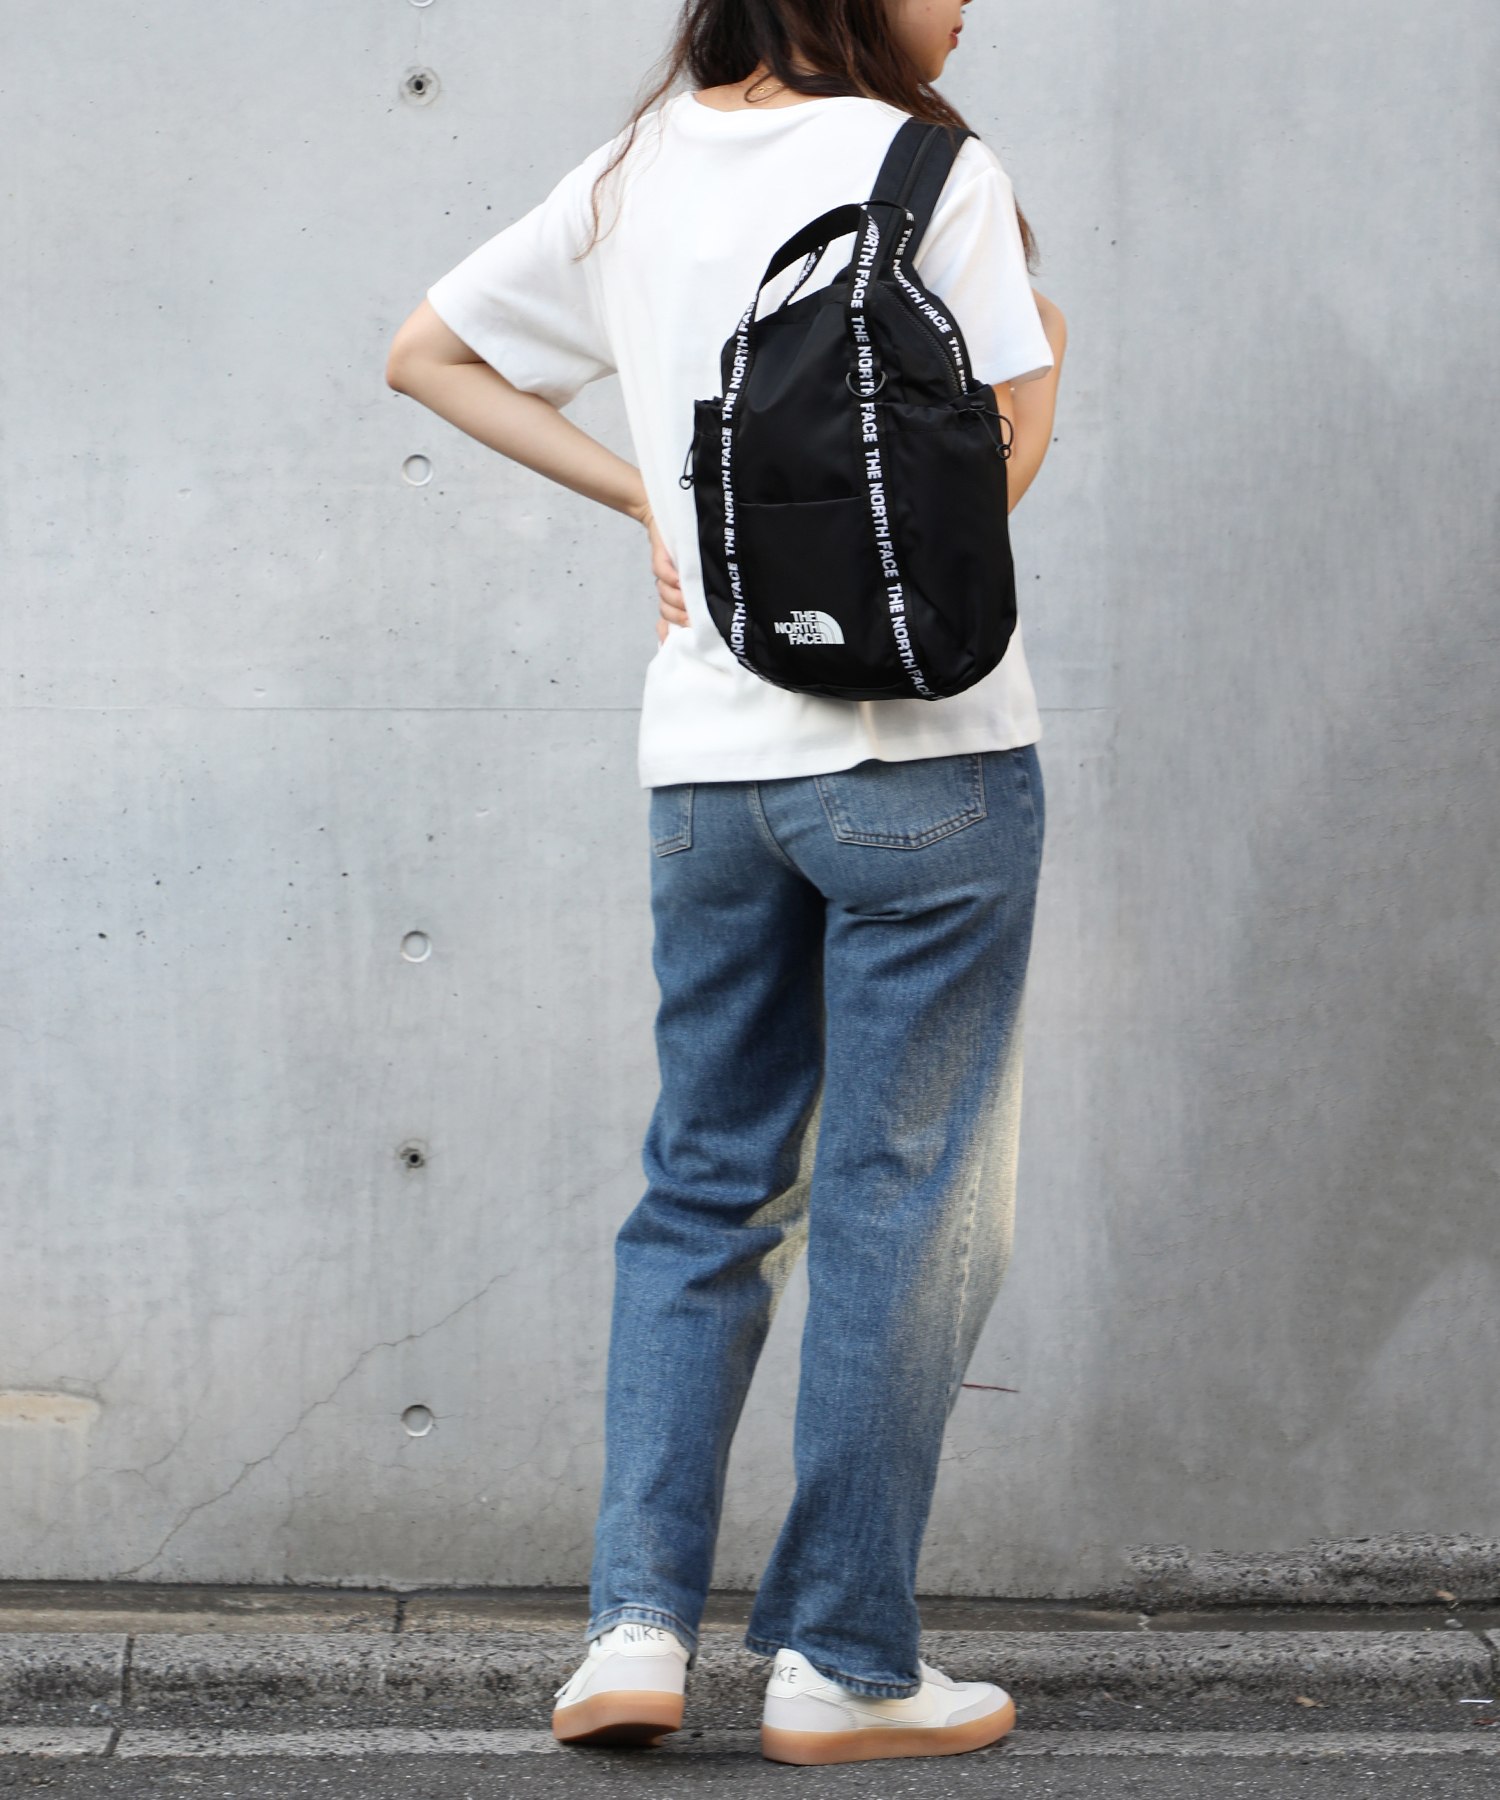 【新品未使用】日本未入荷のノースフェイス ホワイトレーベル 3wayバッグパック